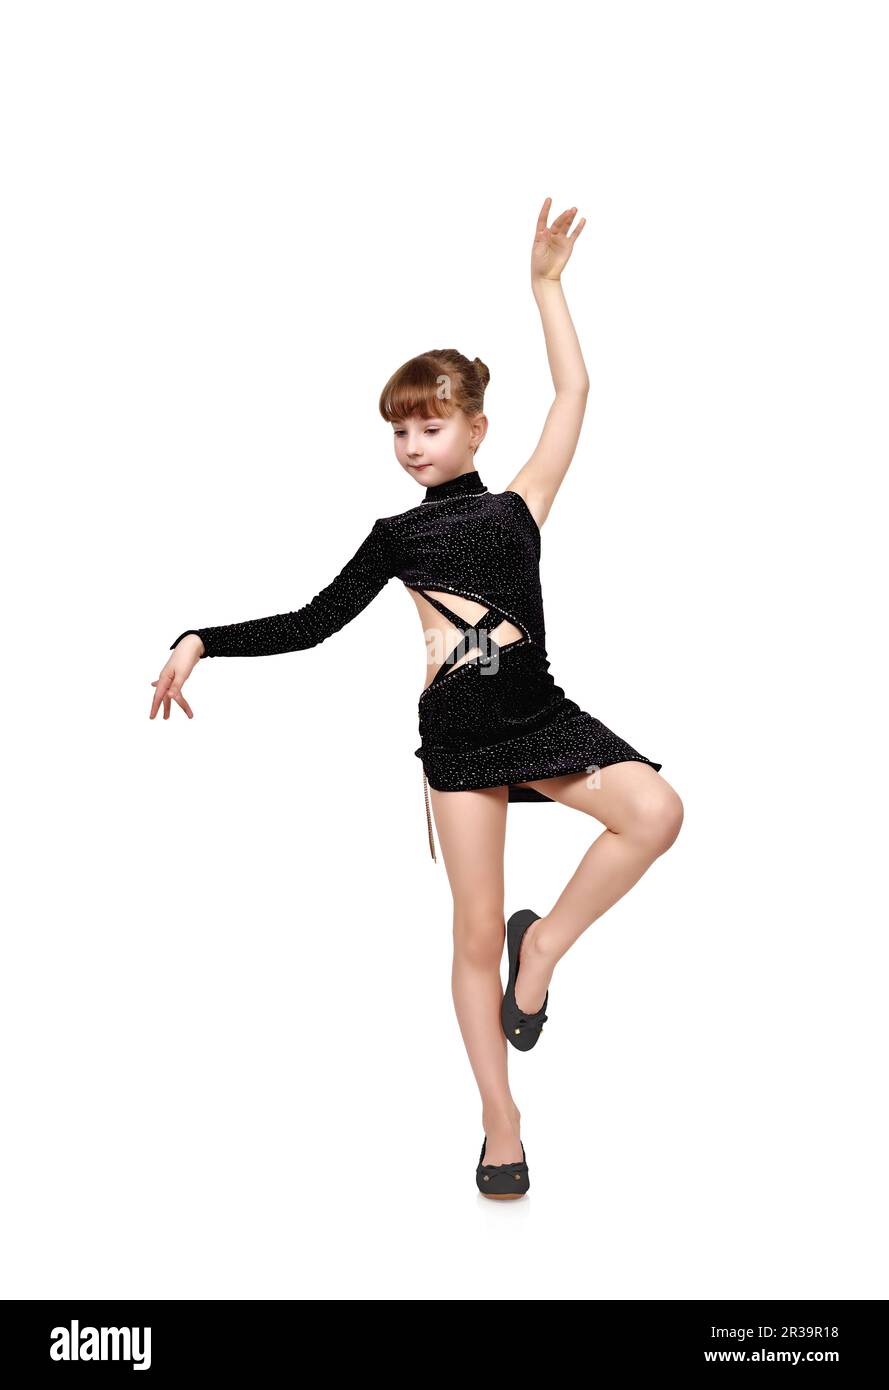 Jeune fille en robe noire dansant sur fond blanc Banque D'Images